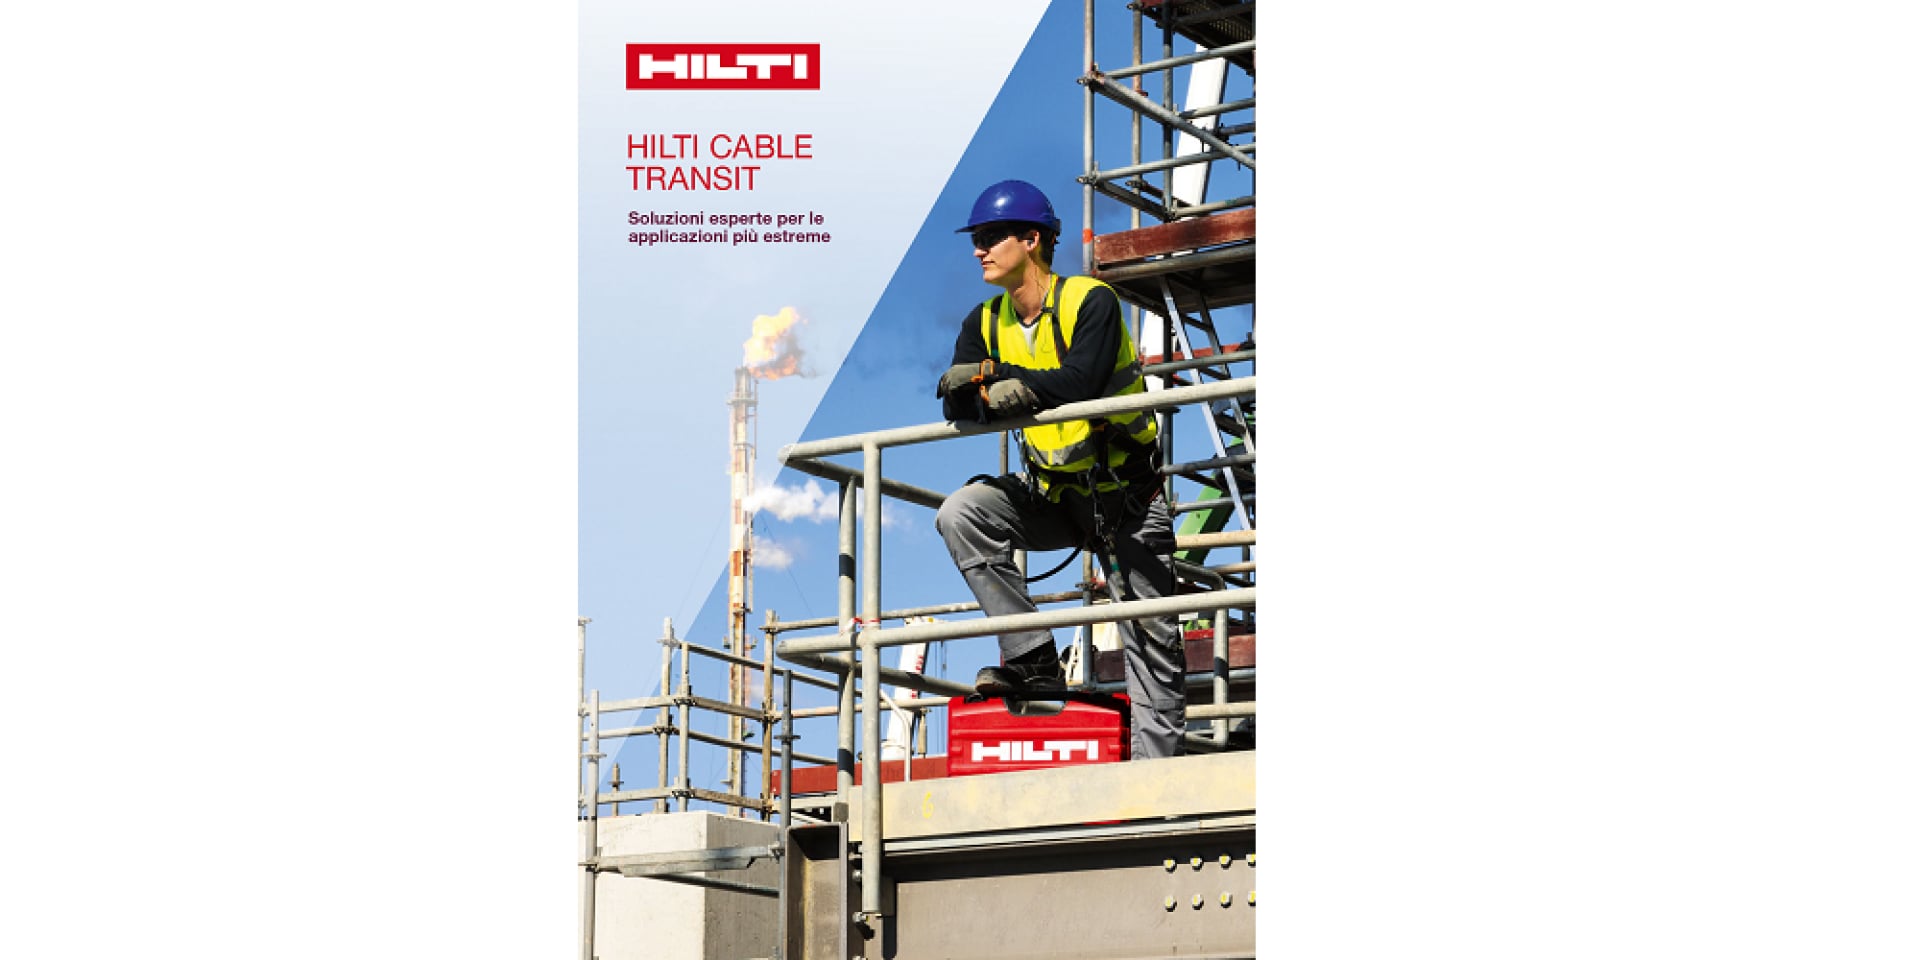 Katalog-Hilti Cable Transit